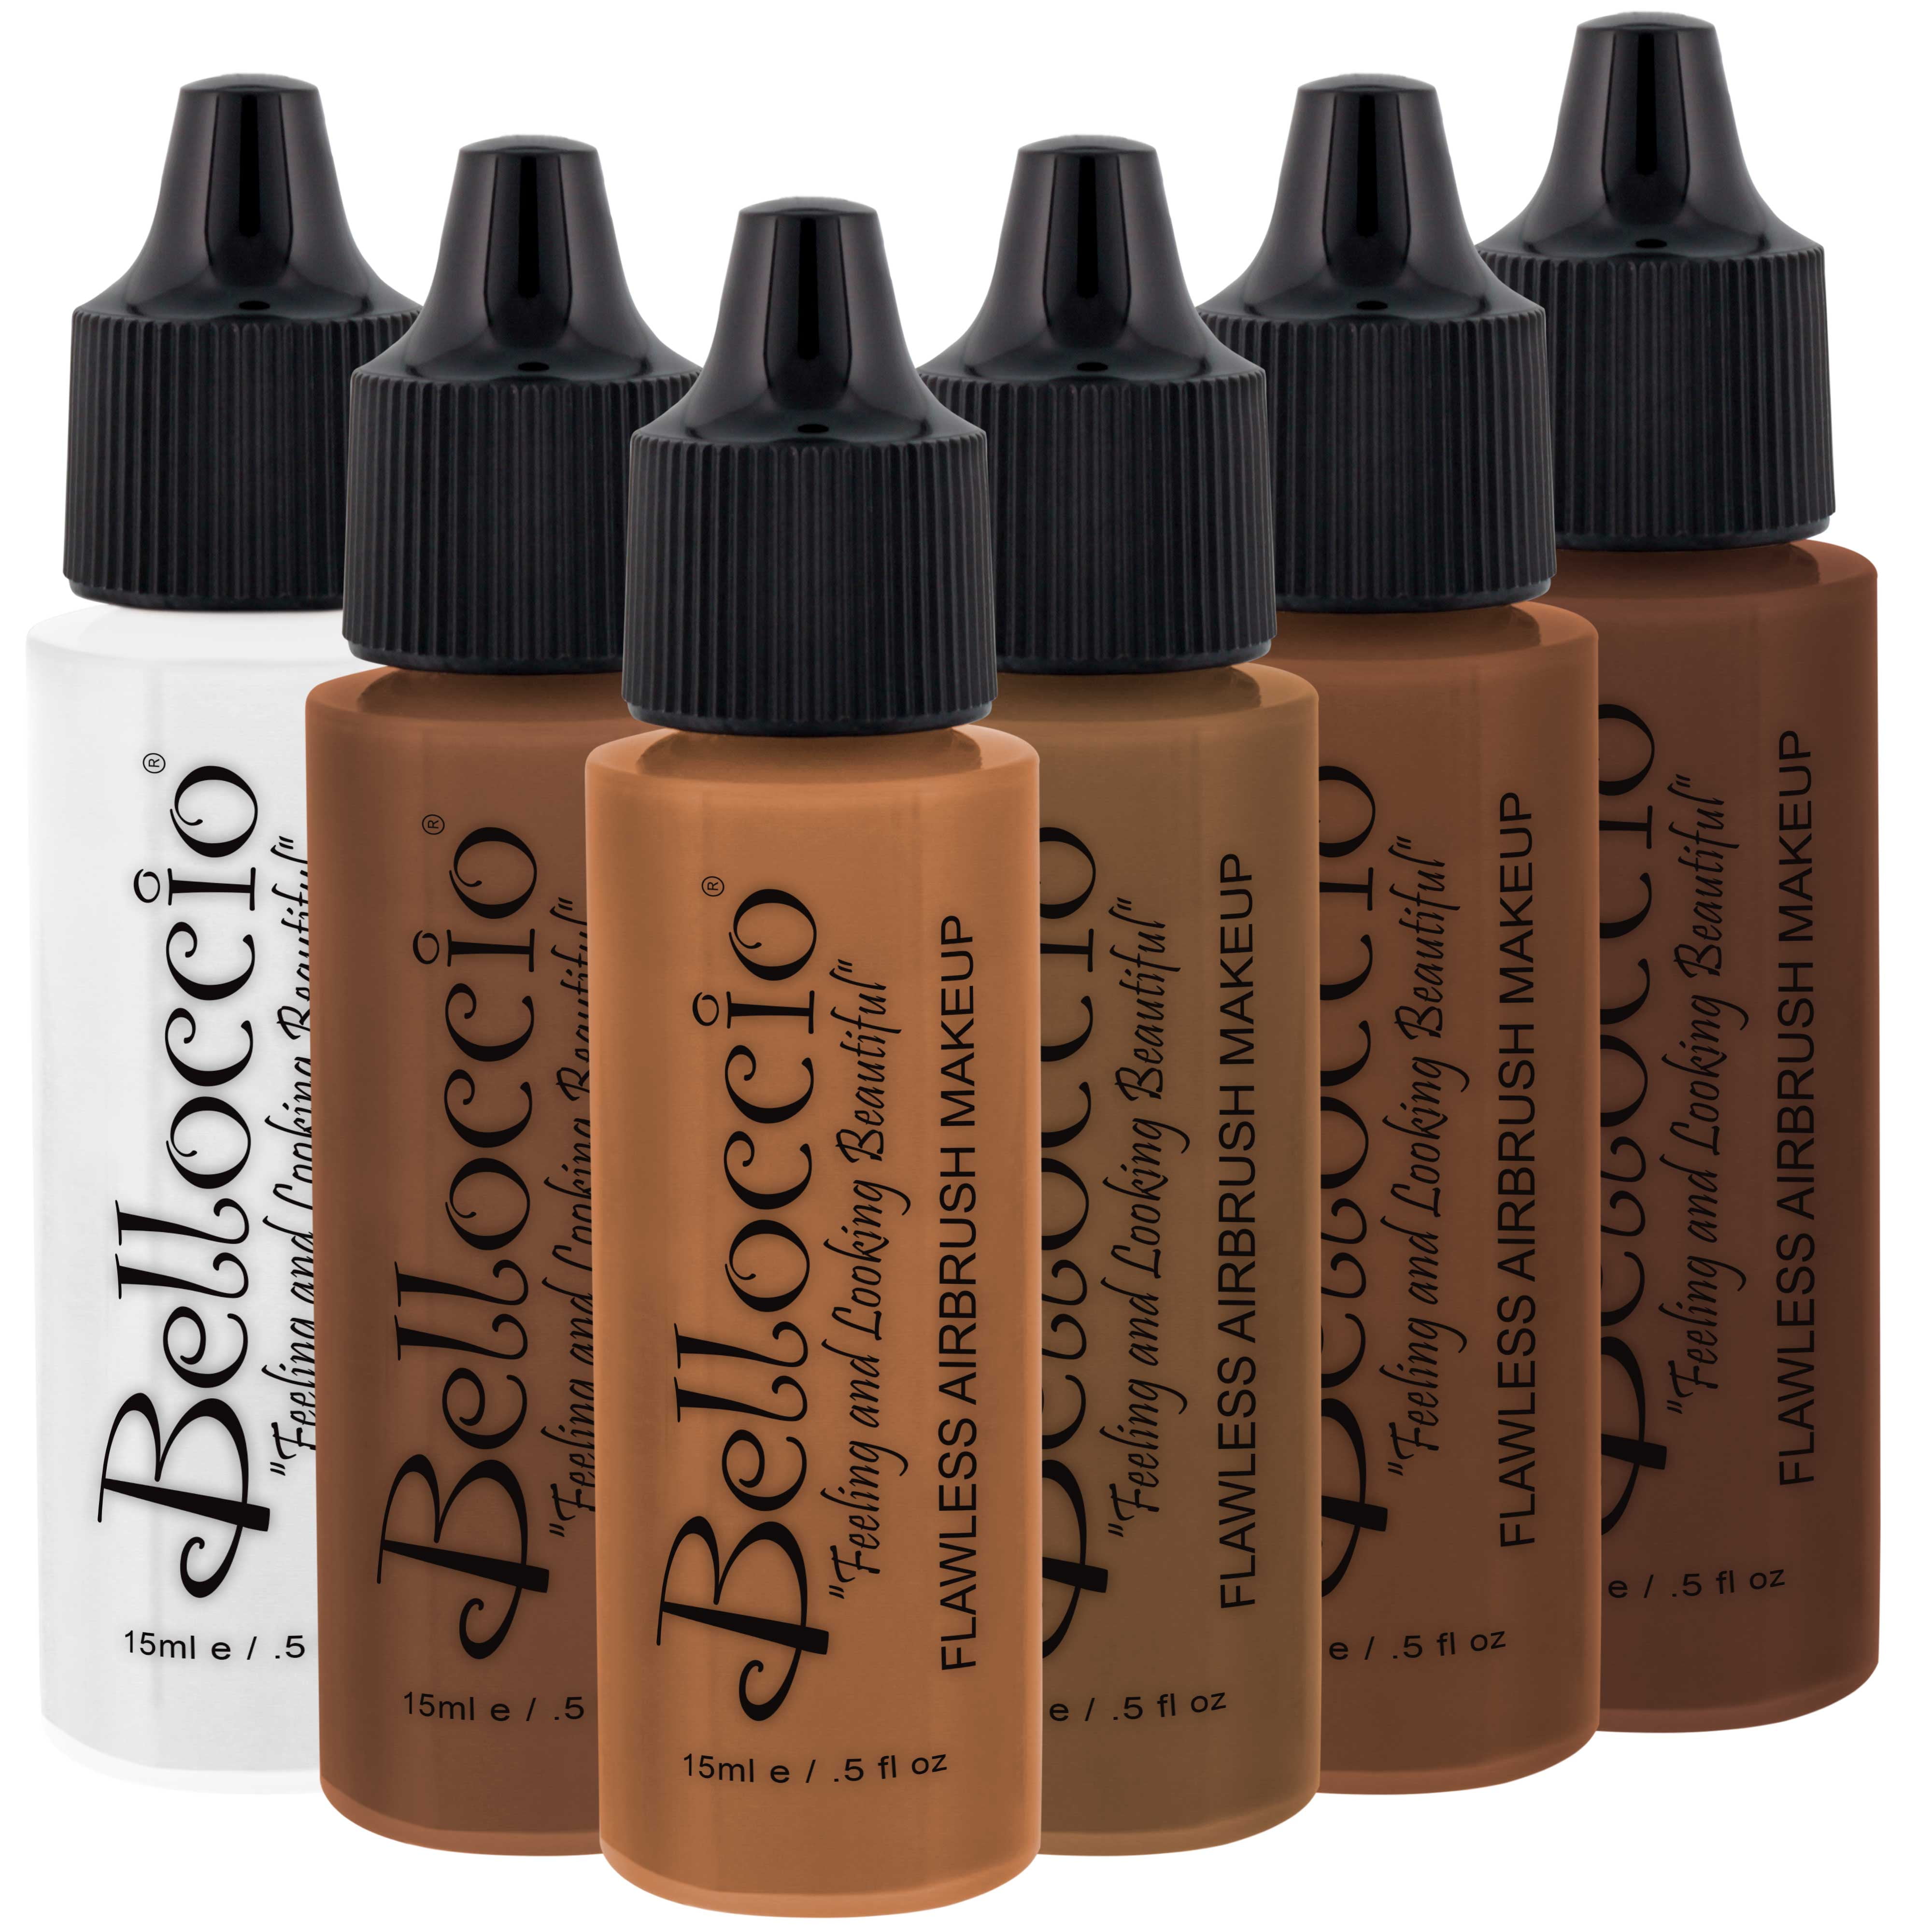 COCOA Color Shade Belloccio Professional Airbrush Makeup Foundation, 1/2 oz.